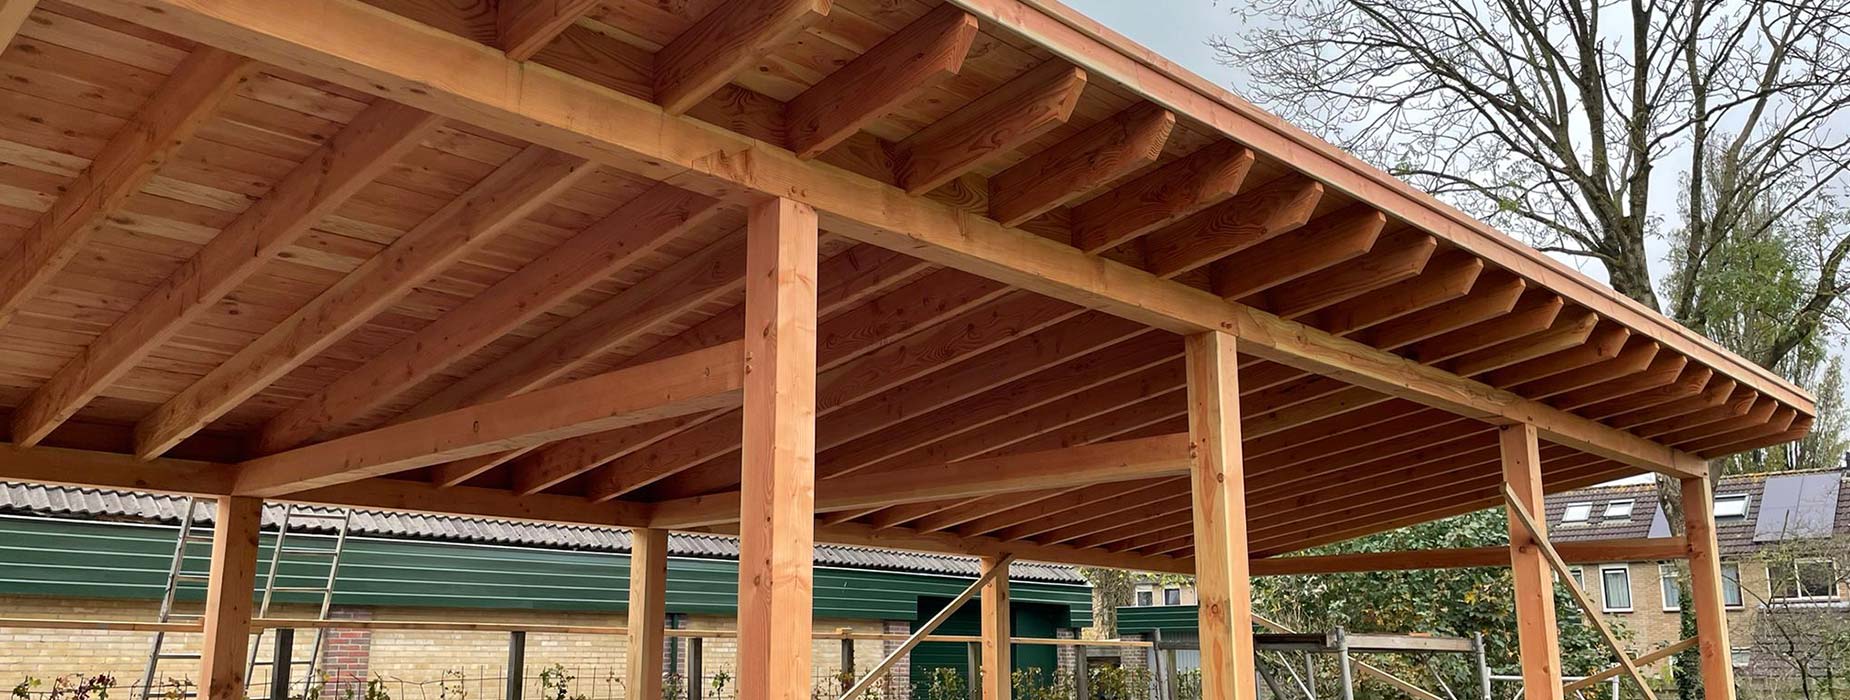 houten-constructie-schuur-of-overkapping-om-zonnepanelen-op-te-plaatsen-laten-maken-door-wielink-houtbouw